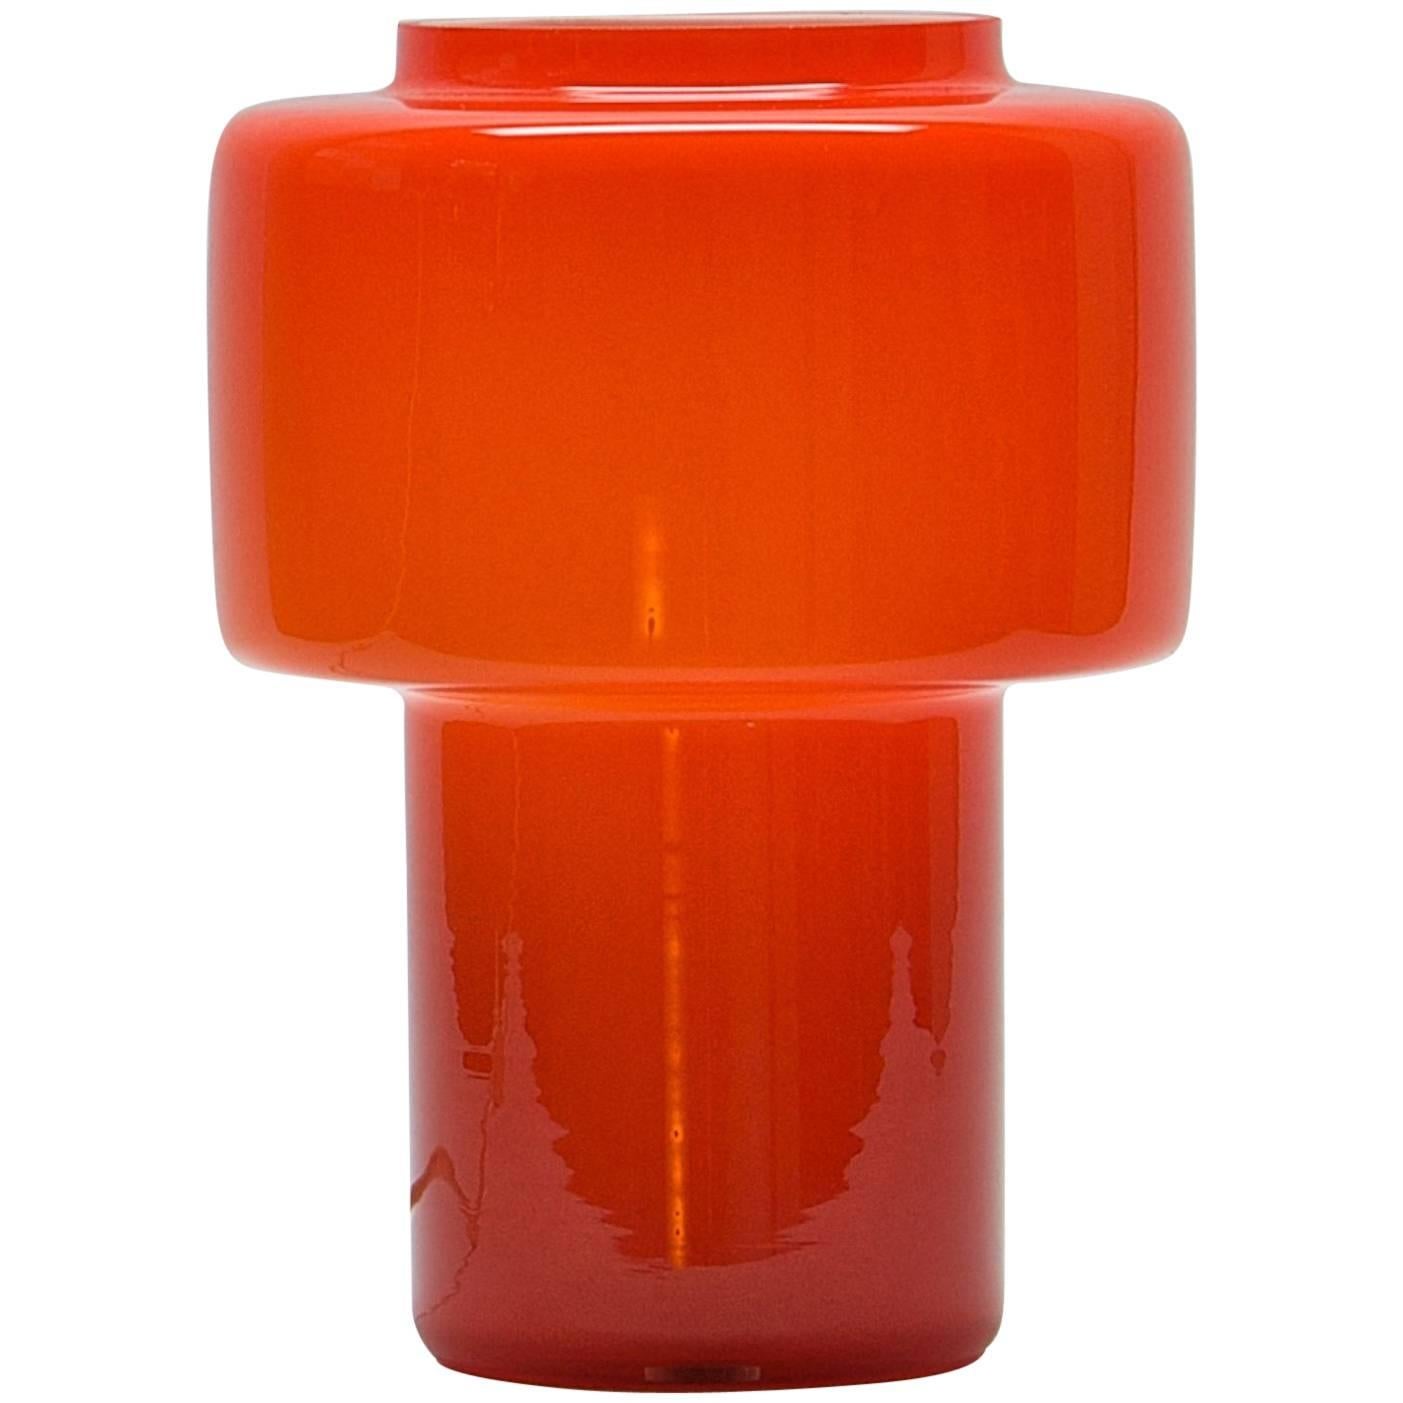 Orange Luxus Lantern Table Lamp, Maximalist Abba Pop Art Panton Scandinavian